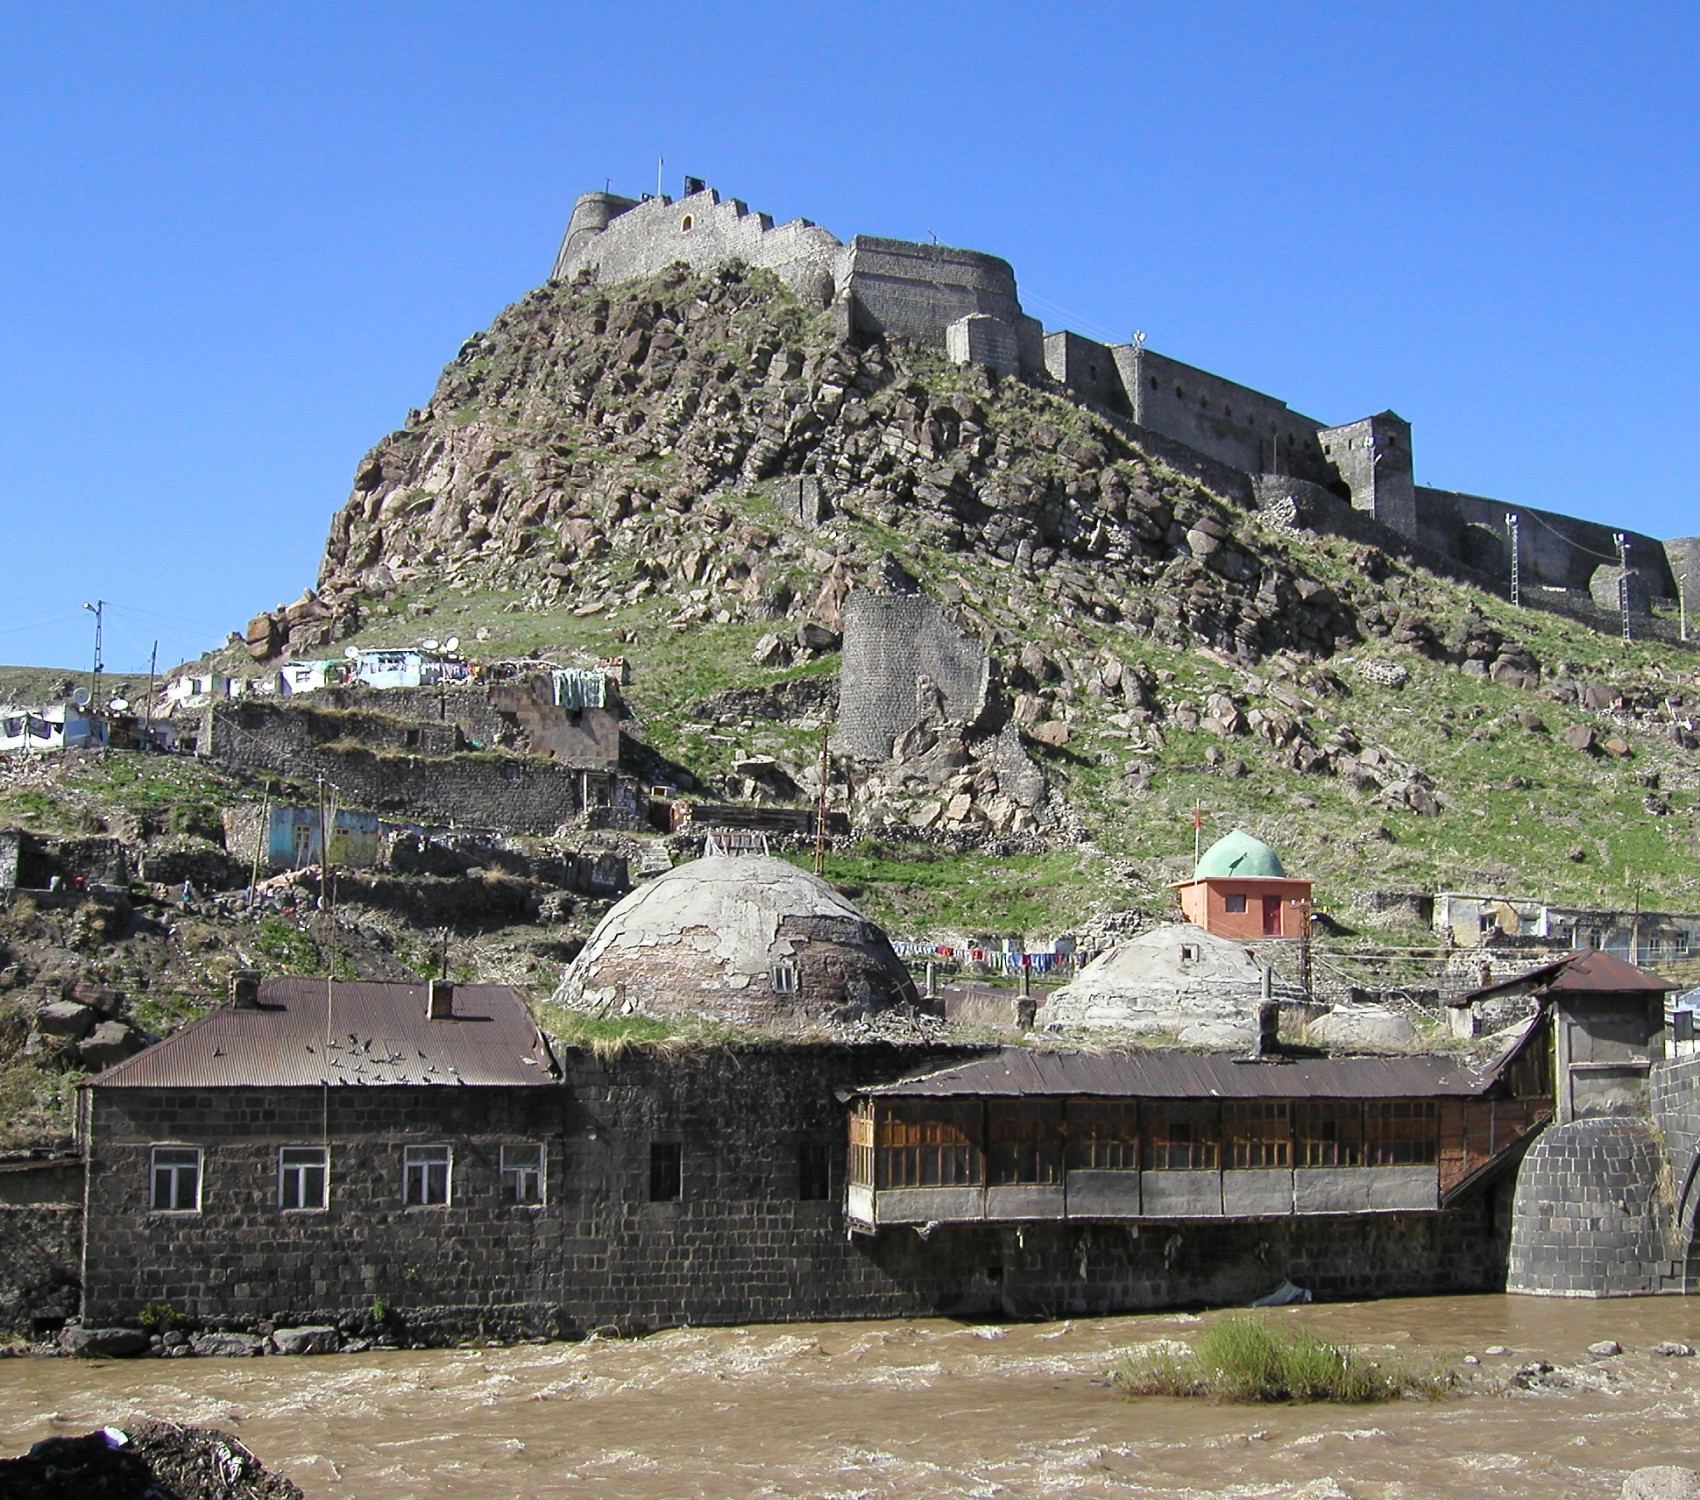 Kars, Turkey – Global Heritage Fund